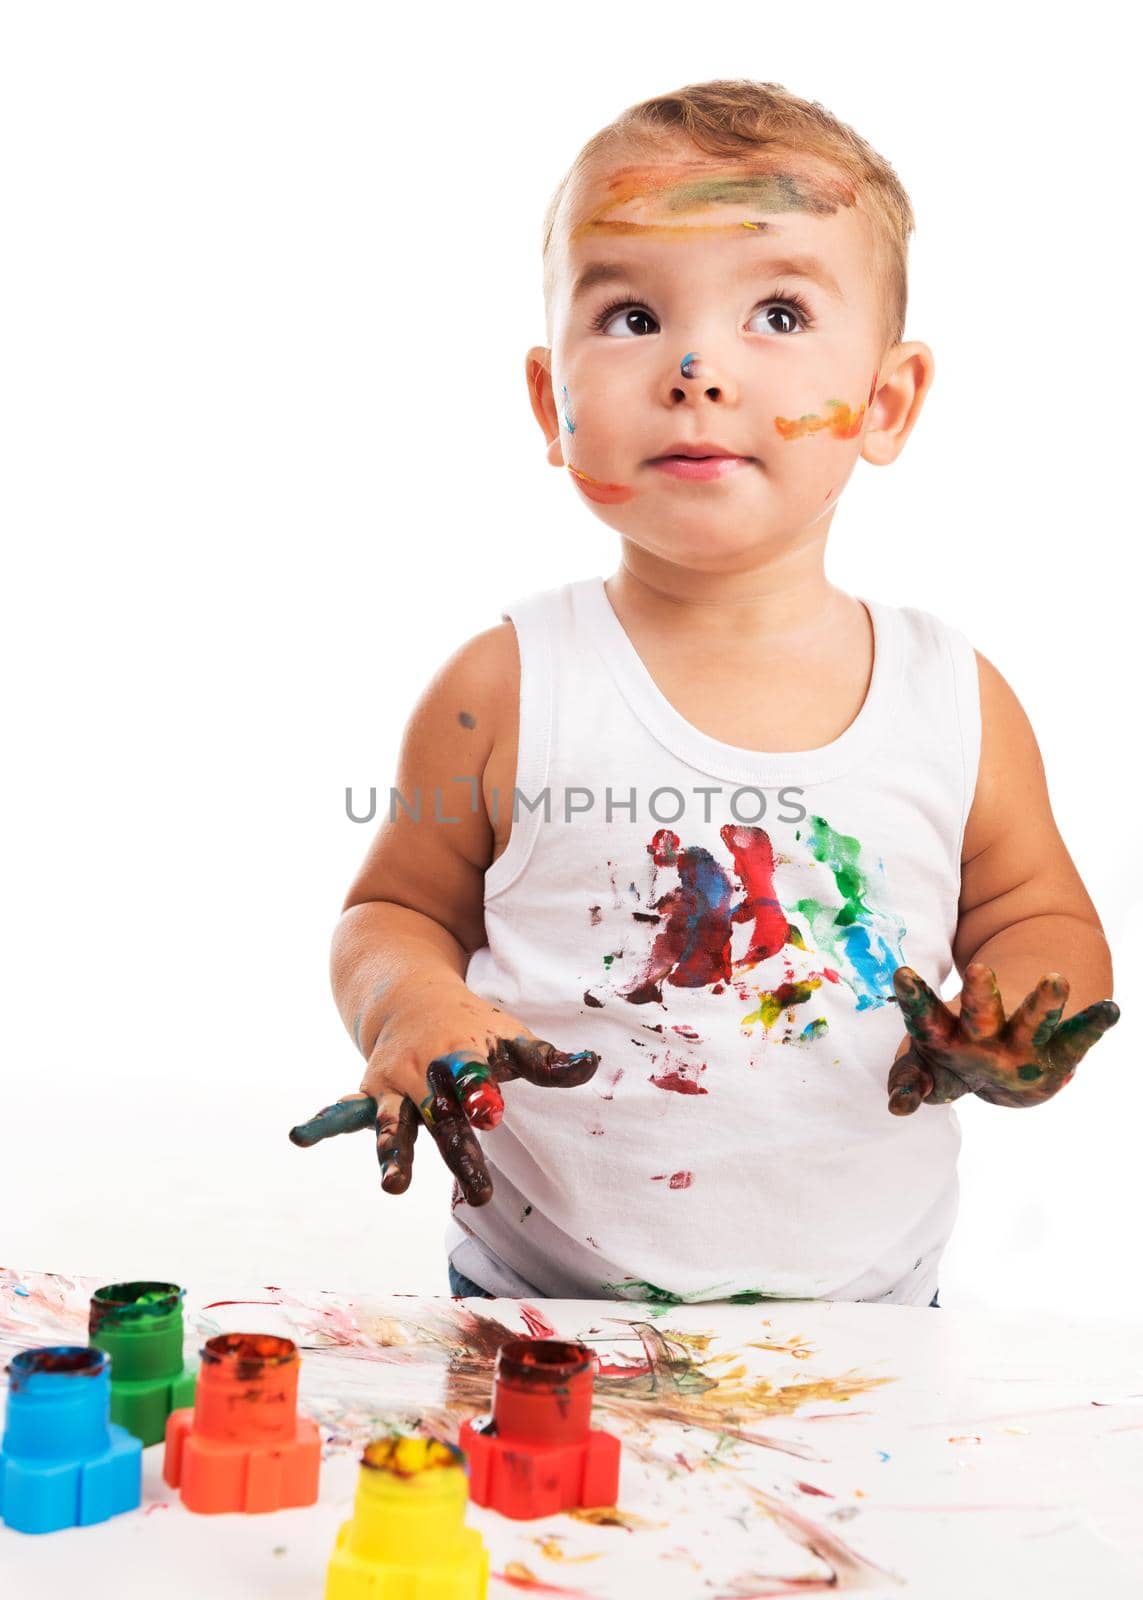 joyful little boy with paints by GekaSkr